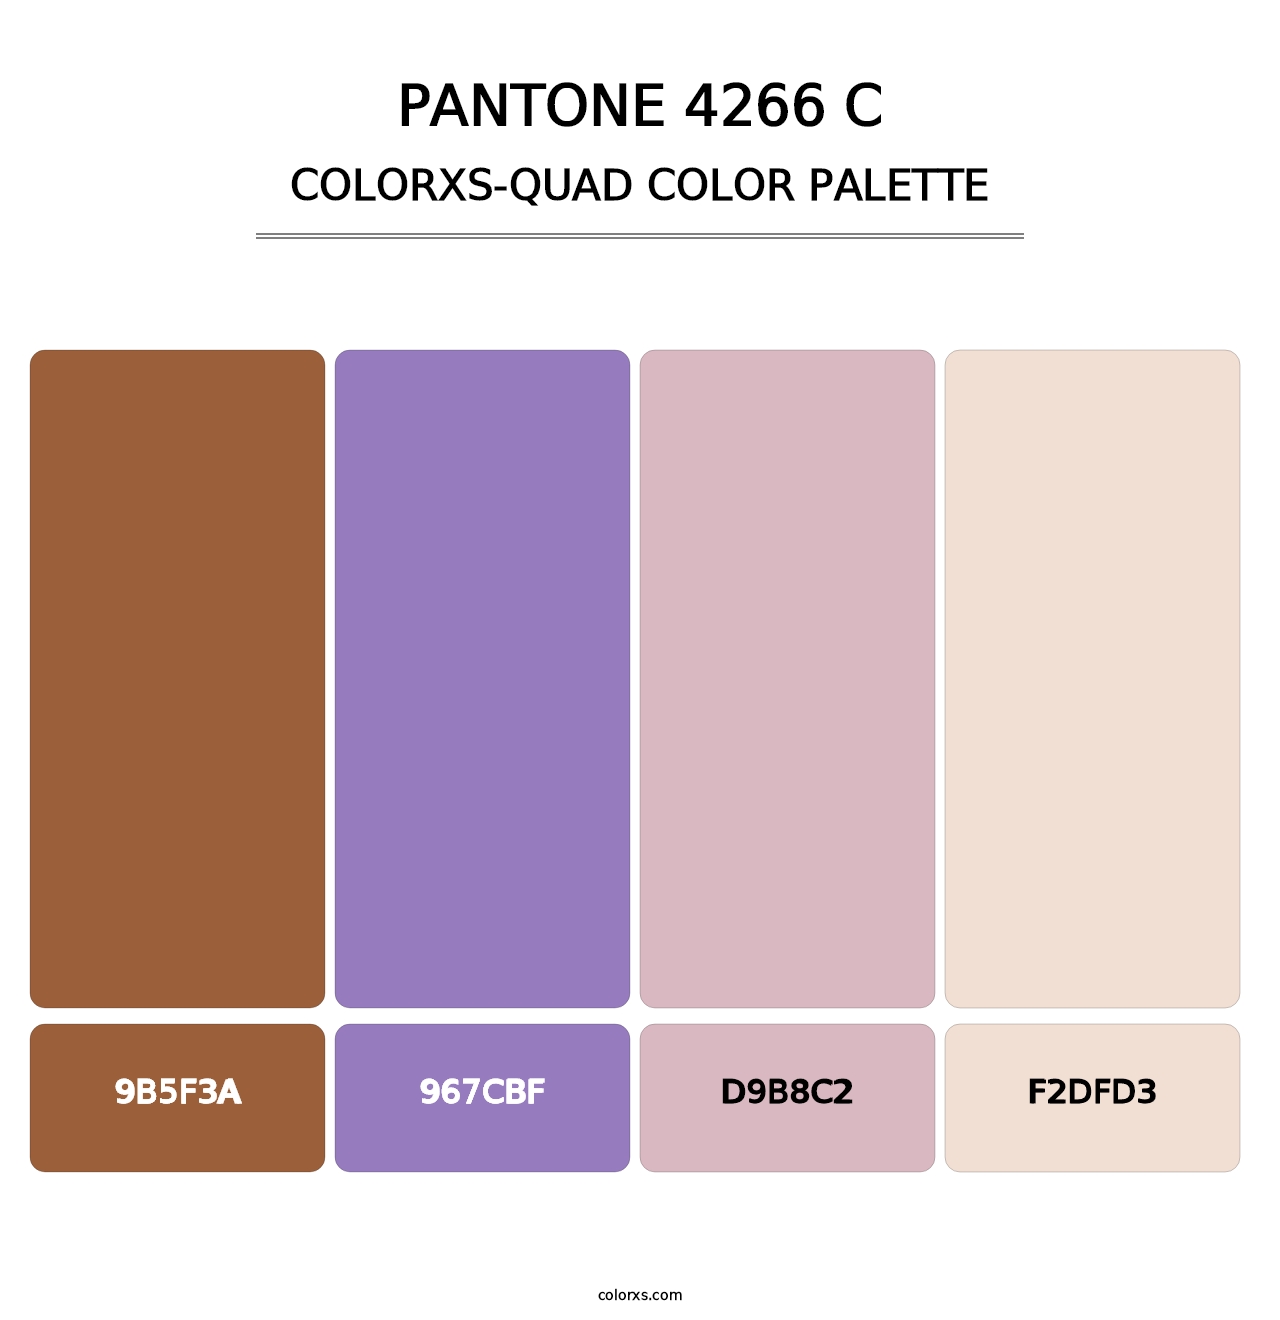 PANTONE 4266 C - Colorxs Quad Palette